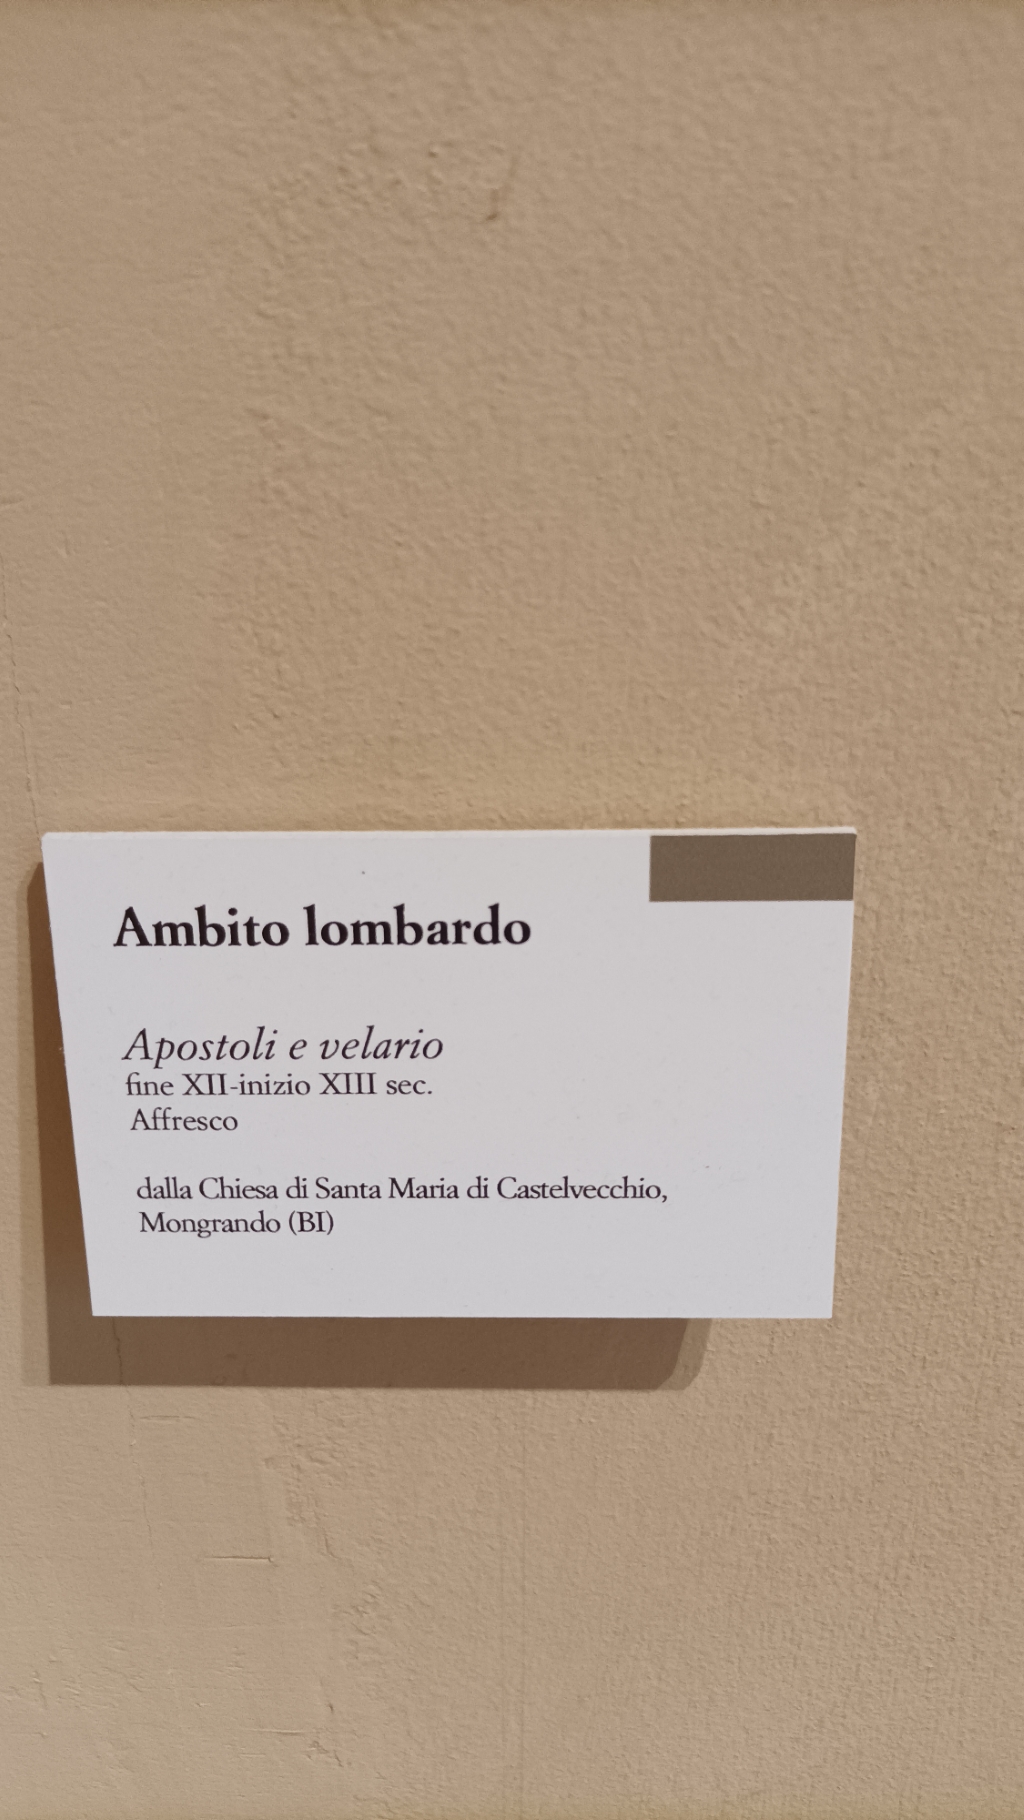 Mongrando - CHIESA DI SANTA MARIA DI CASTELVECCHIO-Cartello illustrativo (museo di Biella)